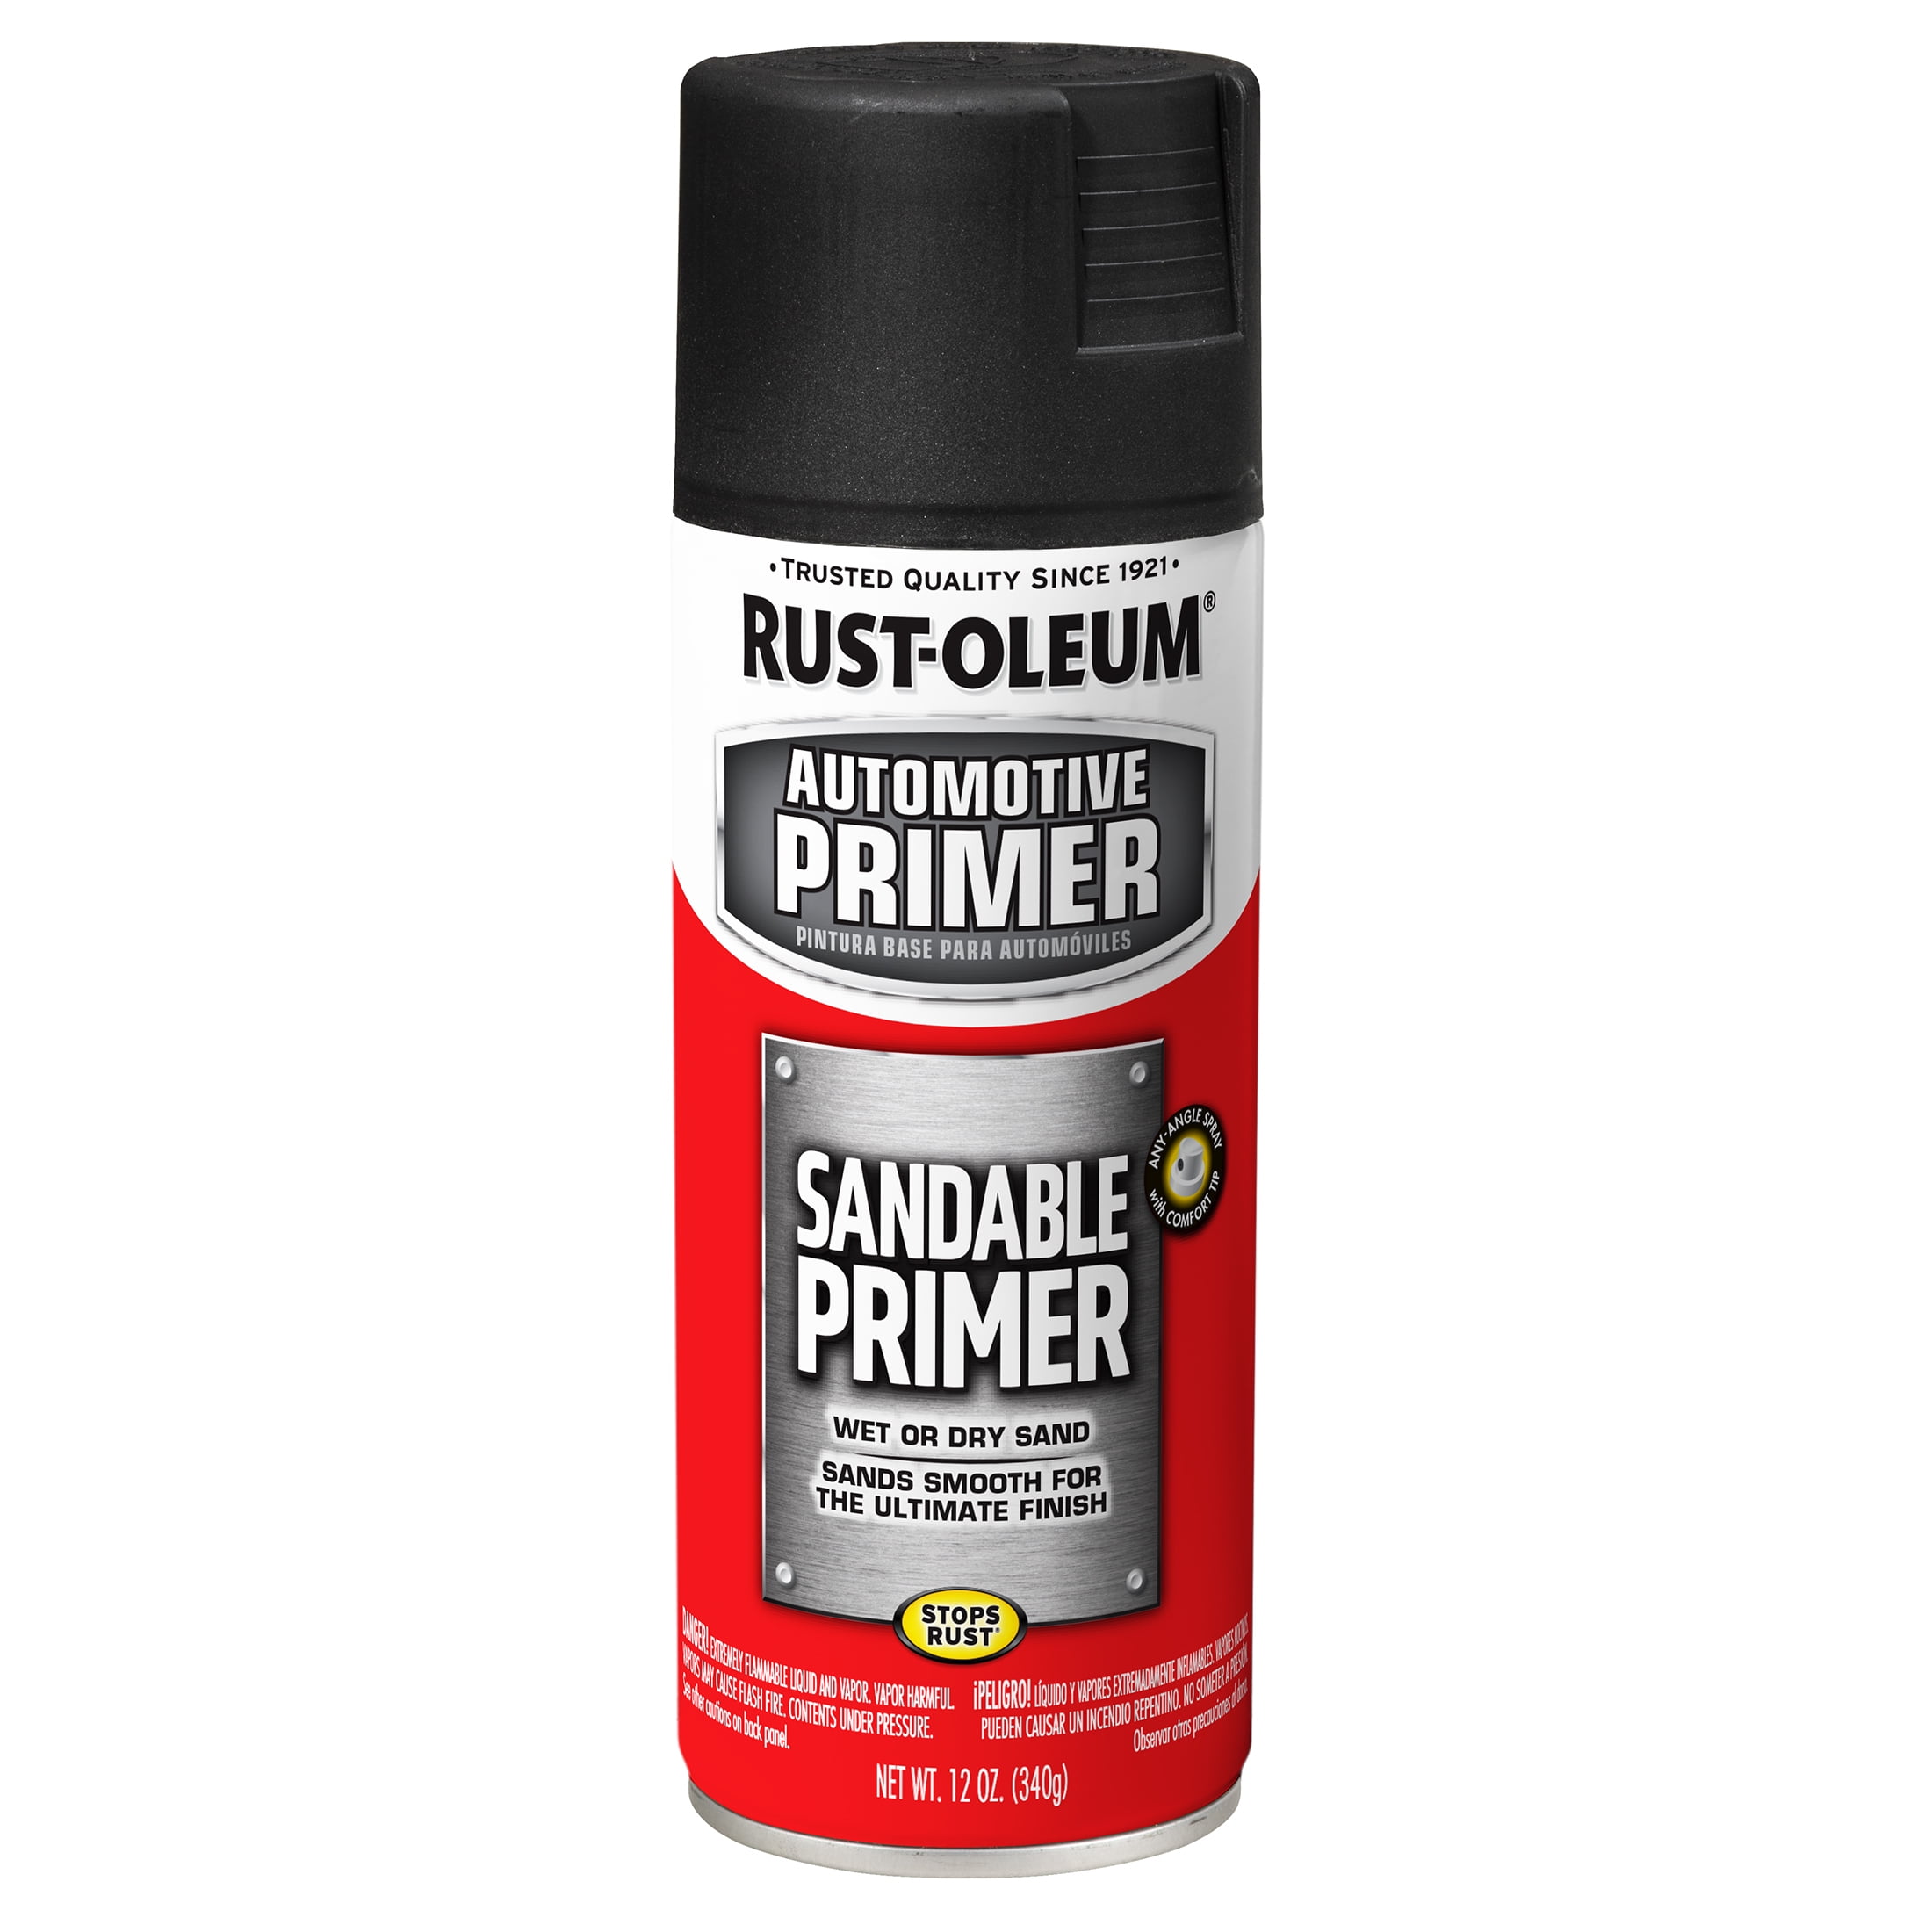 Rustoleum Sandable Auto Primer, Black - 12 oz can